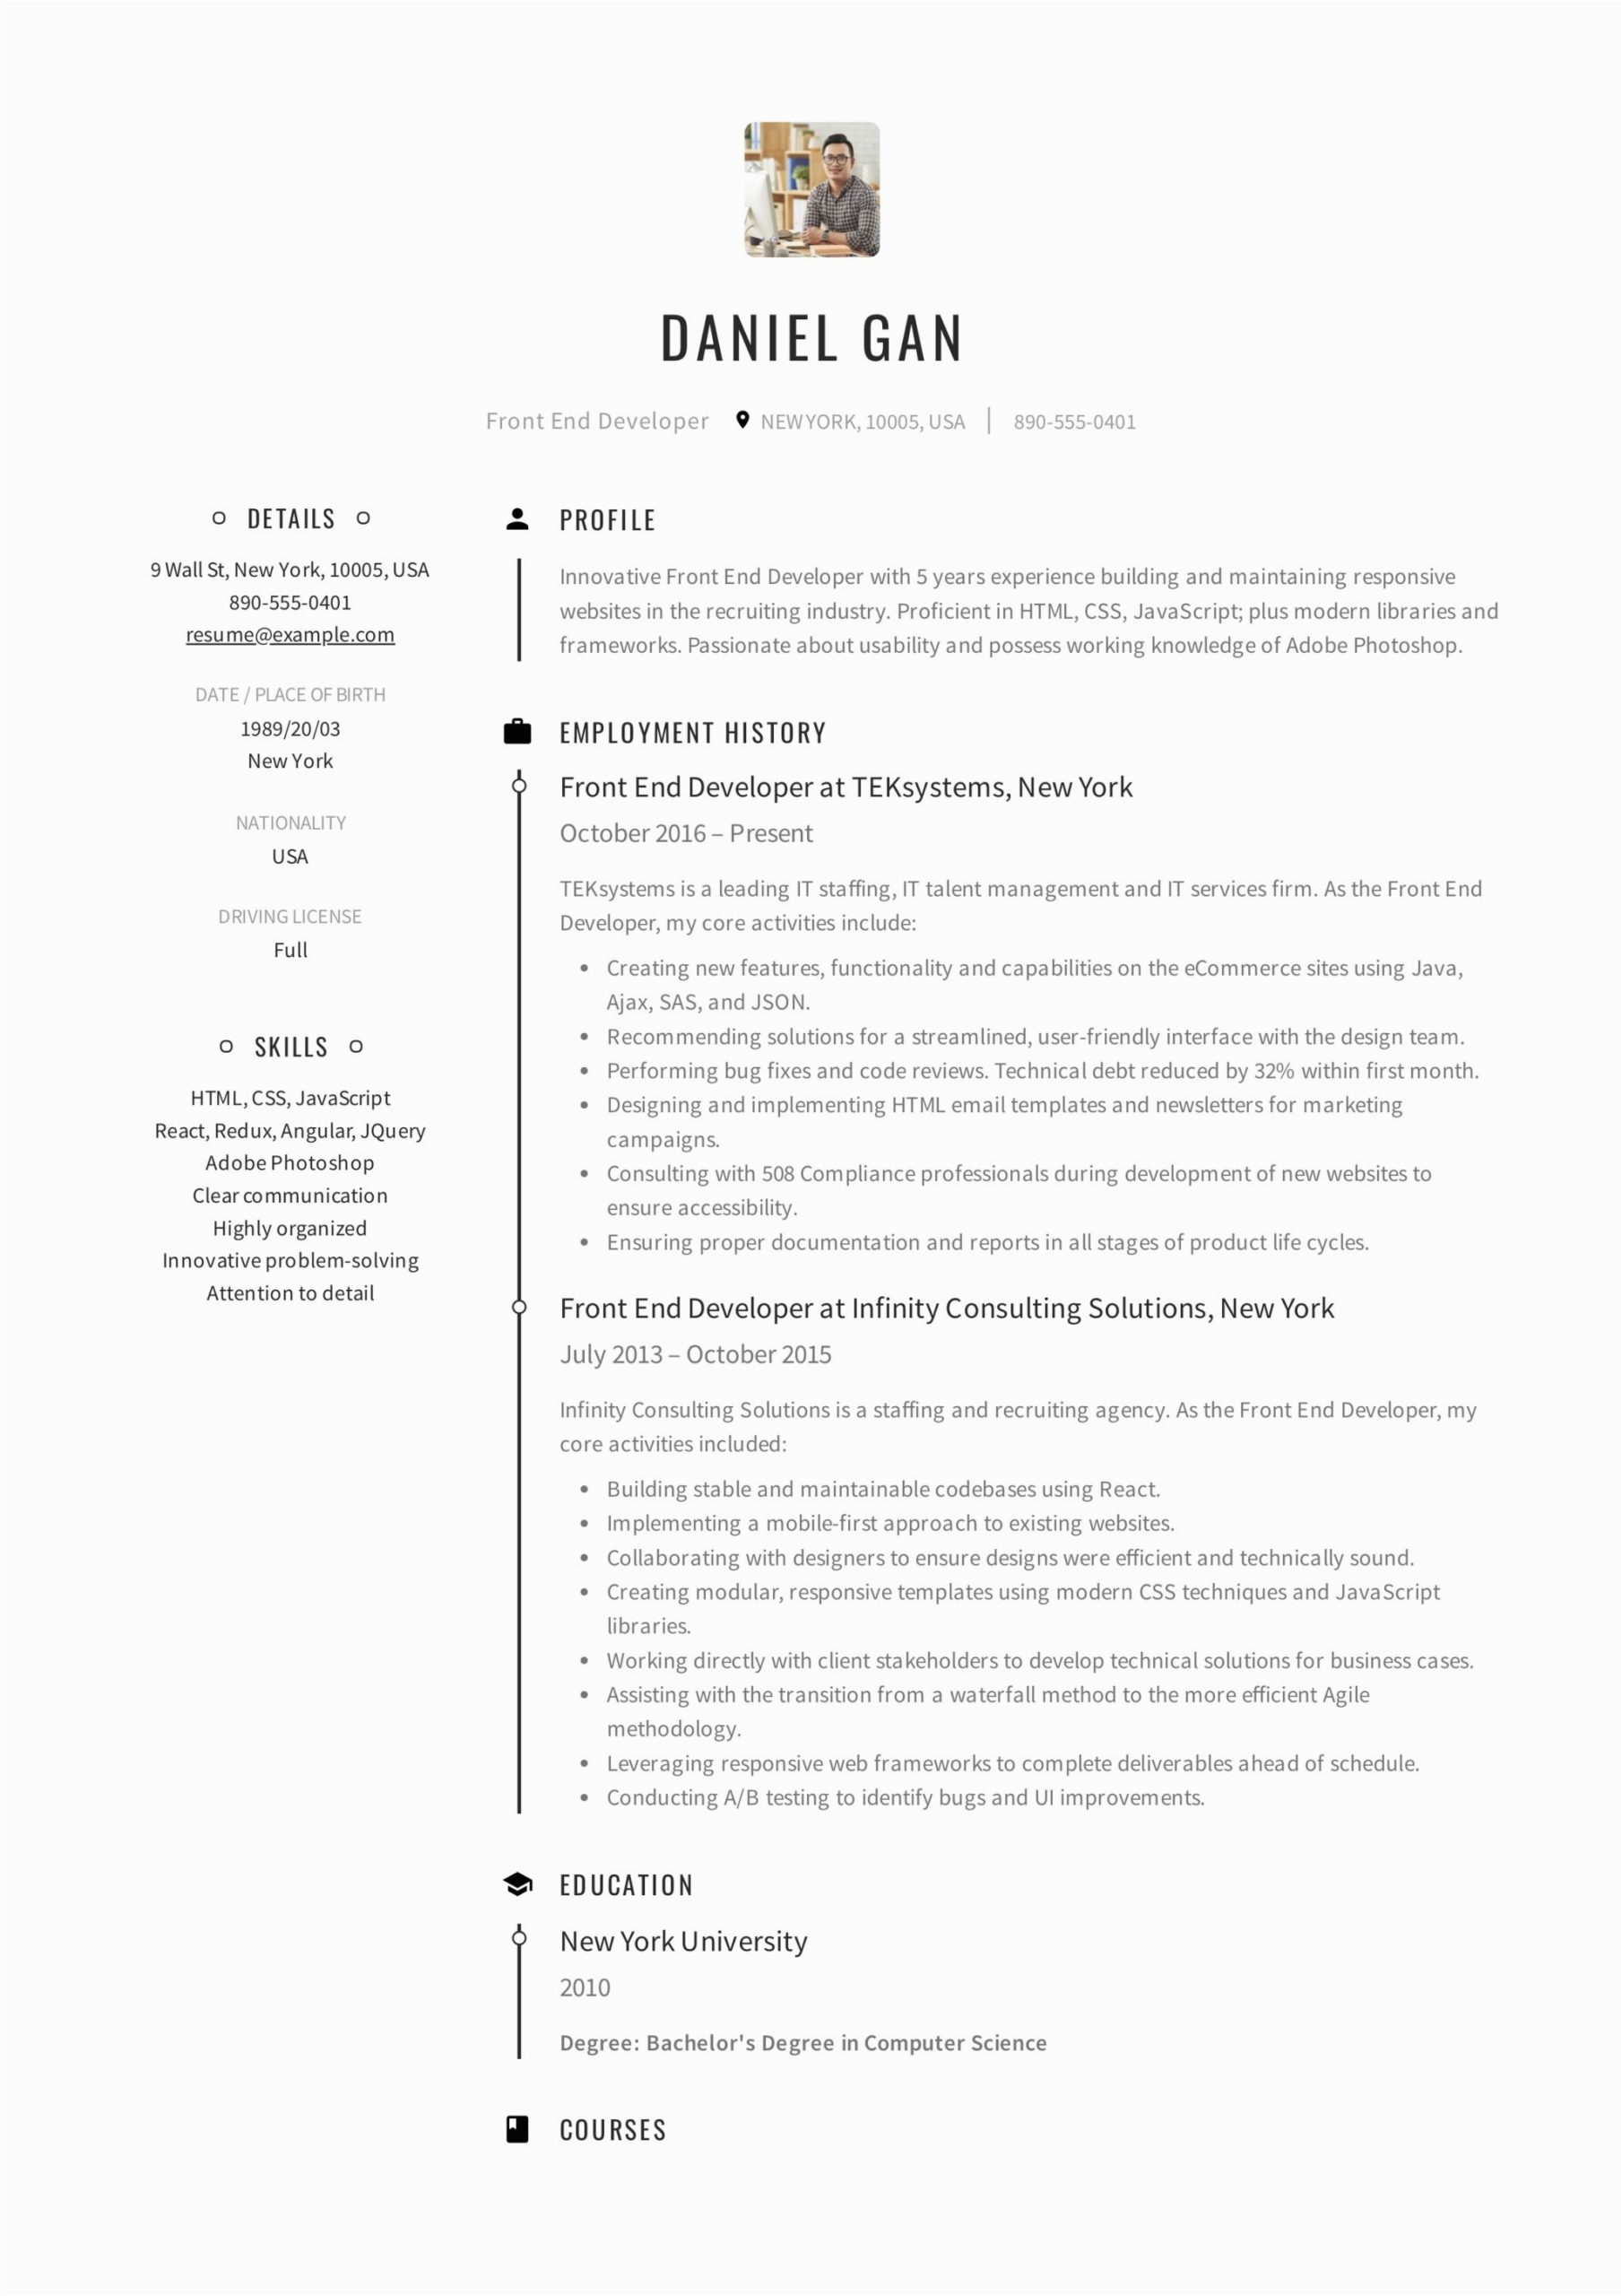 Front End Web Developer Sample Resume Guide Front End Developer Resume [ 12 Samples ] Pdf